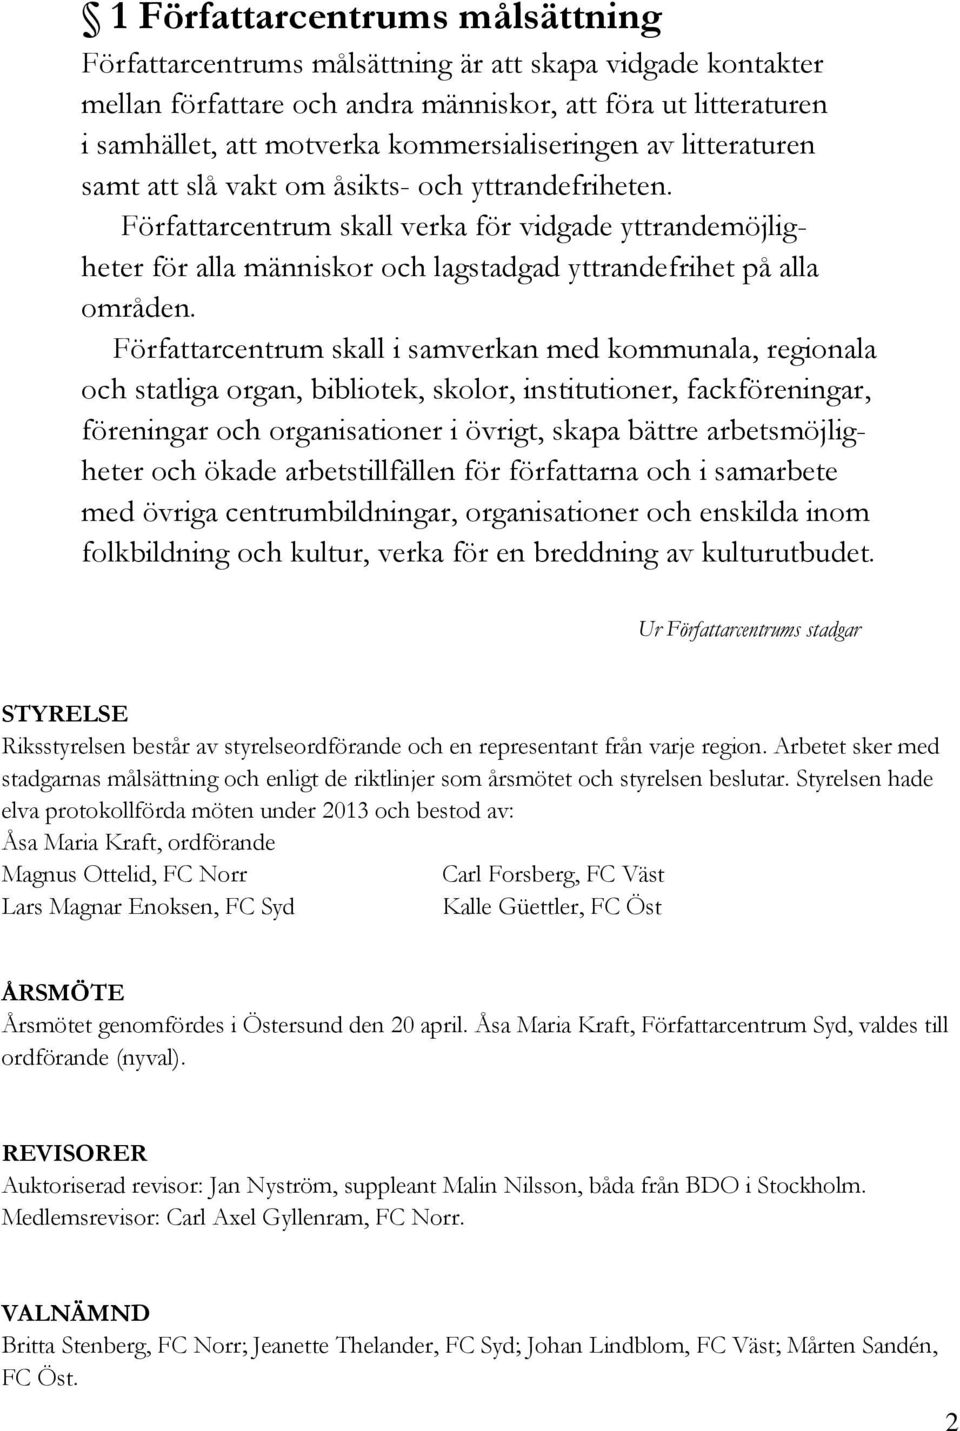 Verksamhetsberättelse 2013 Författarcentrum Riks - PDF Gratis nedladdning